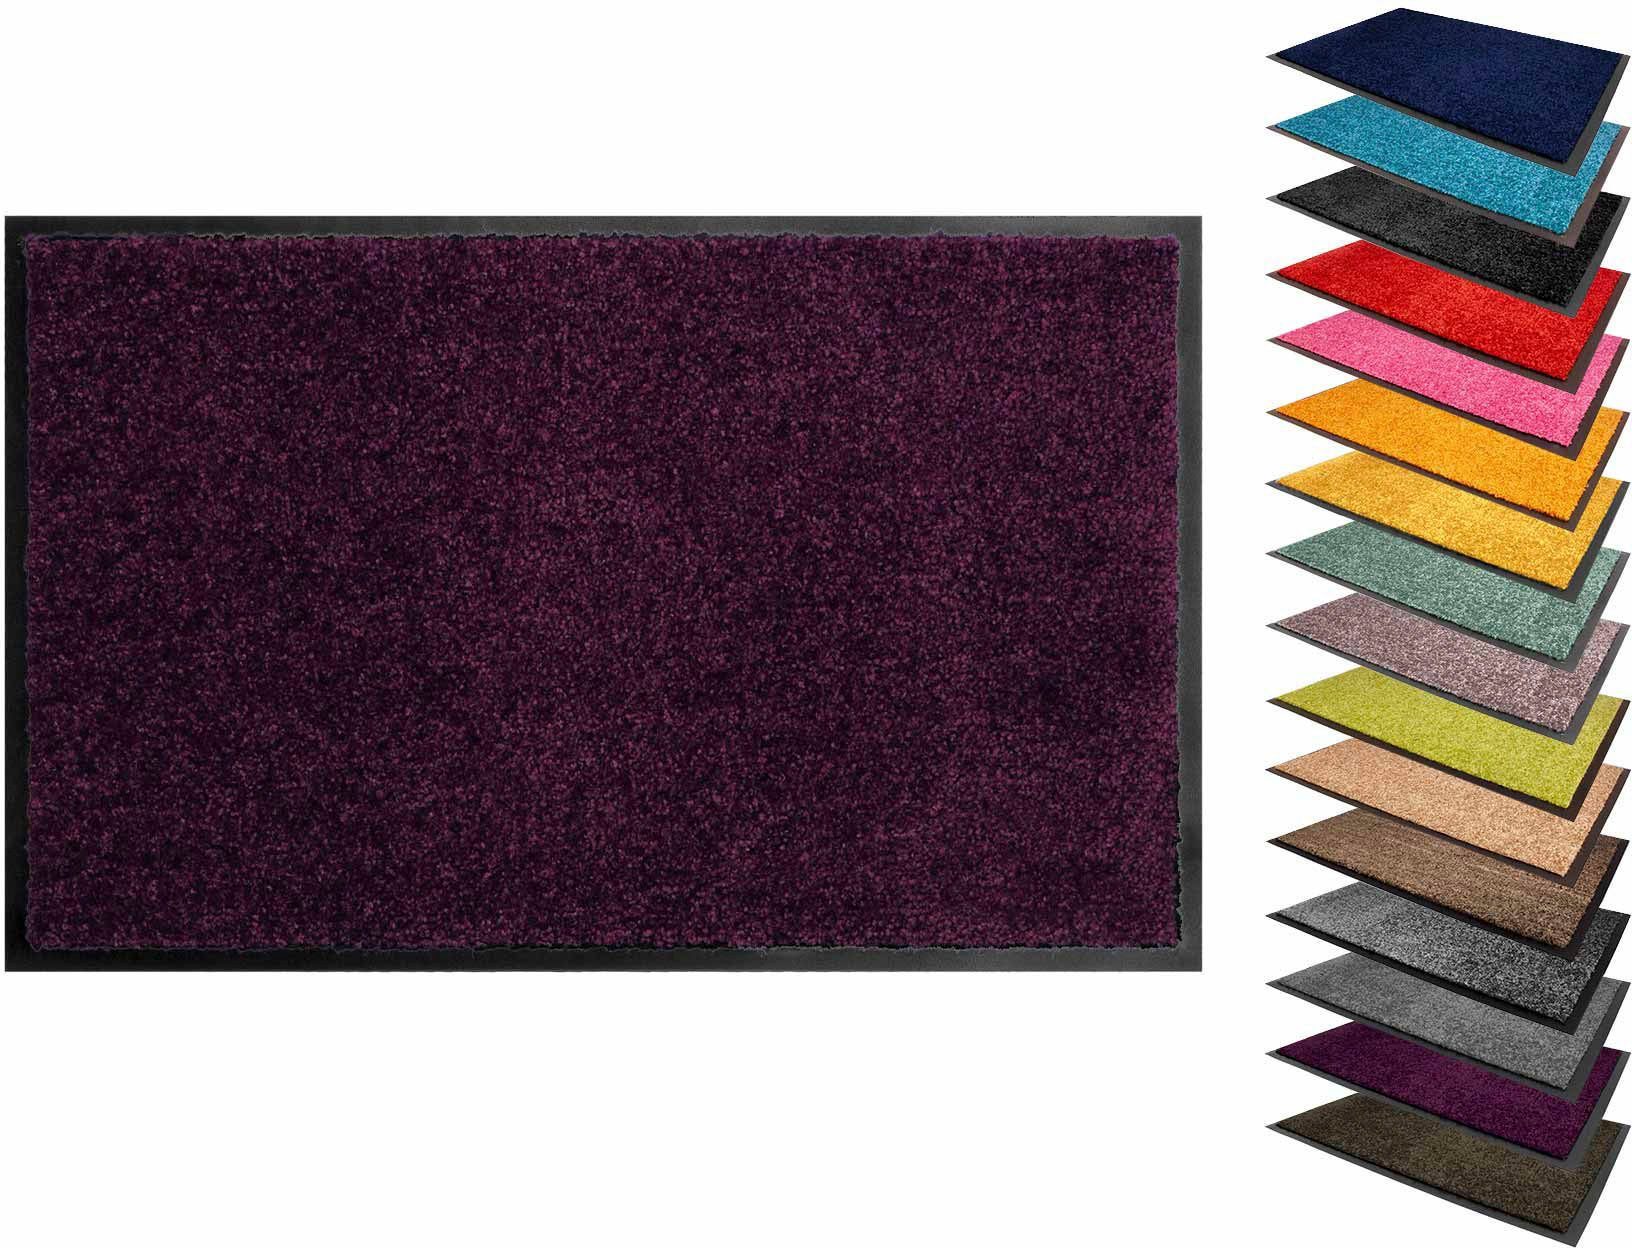 Höhe: Primaflor-Ideen Uni-Farben, Fußmatte mm, lila CLEAN rechteckig, in PRO, Schmutzfangmatte, 8 Textil, waschbar UV-beständig, Schmutzfangmatte